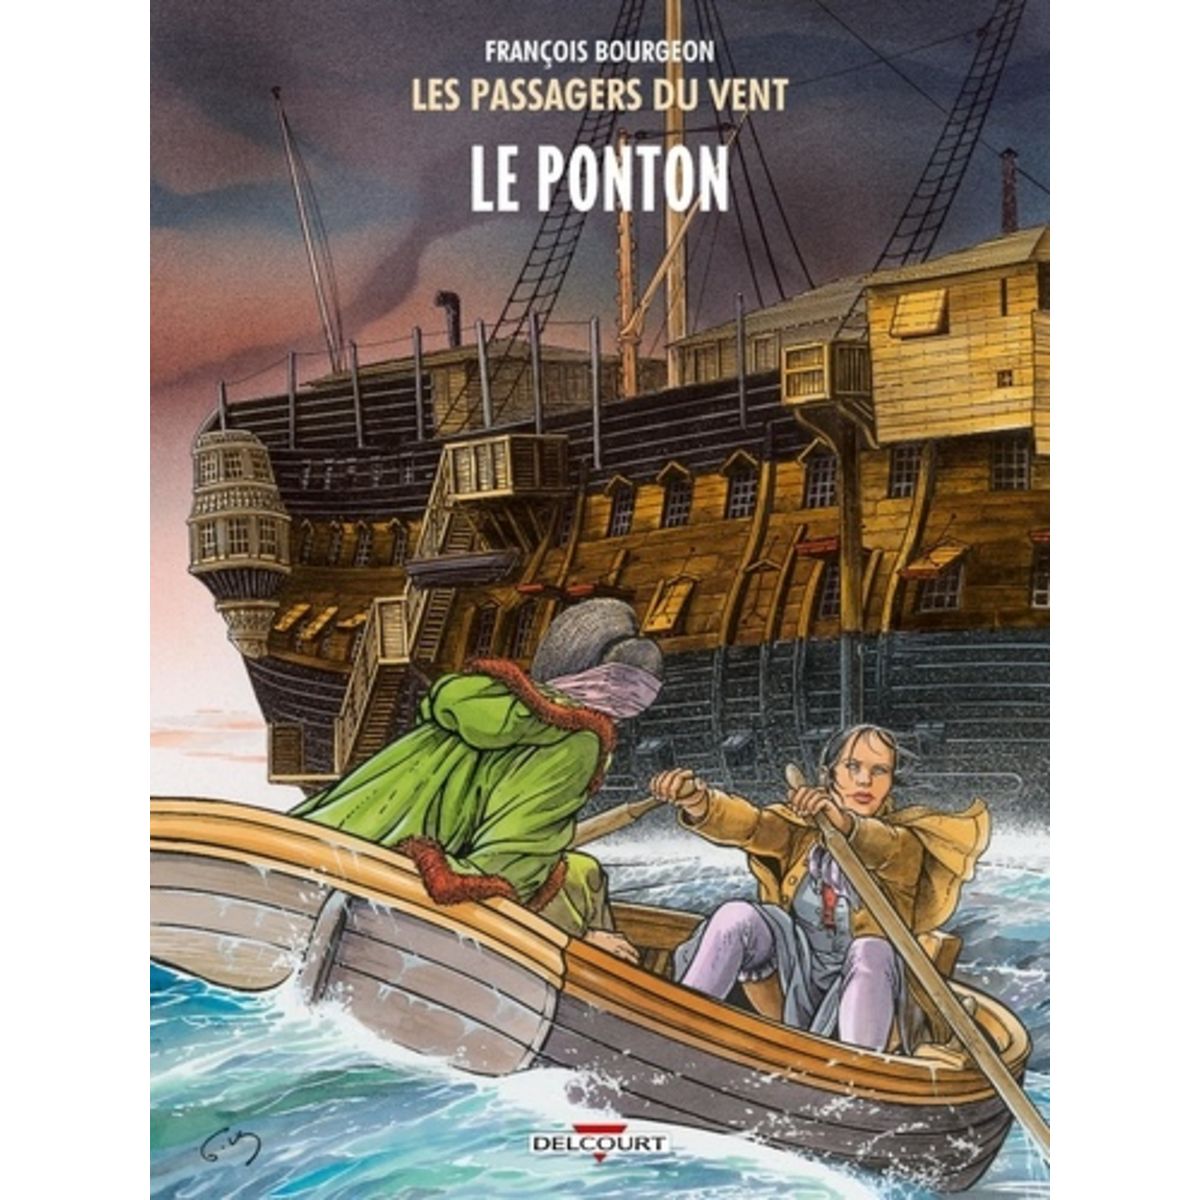  LES PASSAGERS DU VENT TOME 2 : LE PONTON, Bourgeon François